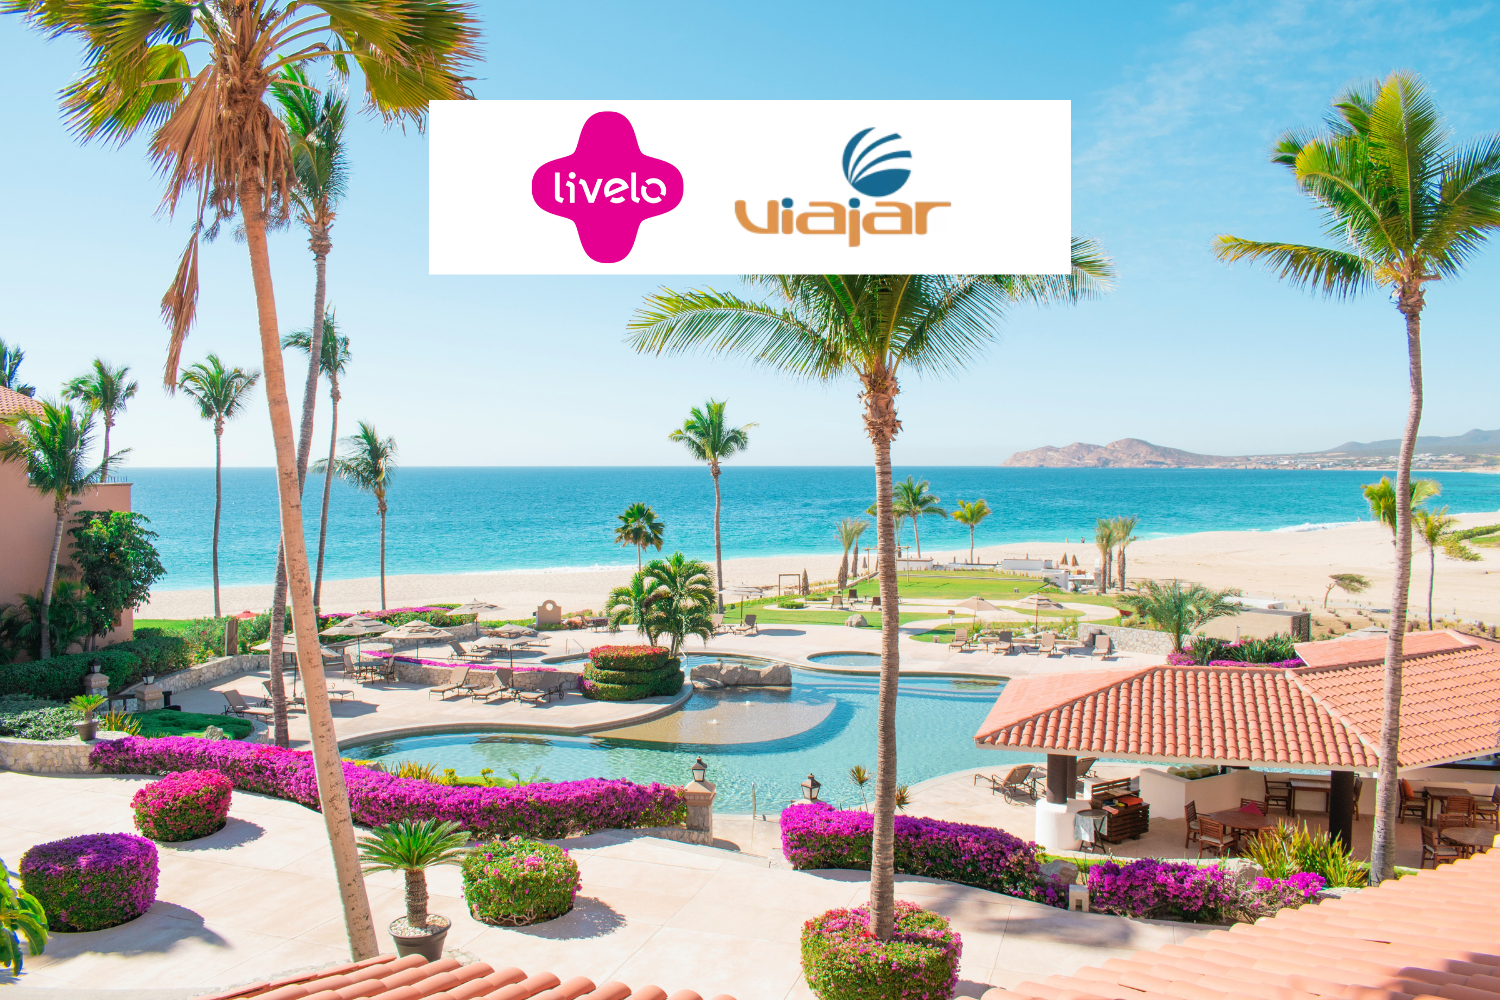 resort com logo Livelo e Viajar Resorts Brasil Até 10 pontos Livelo